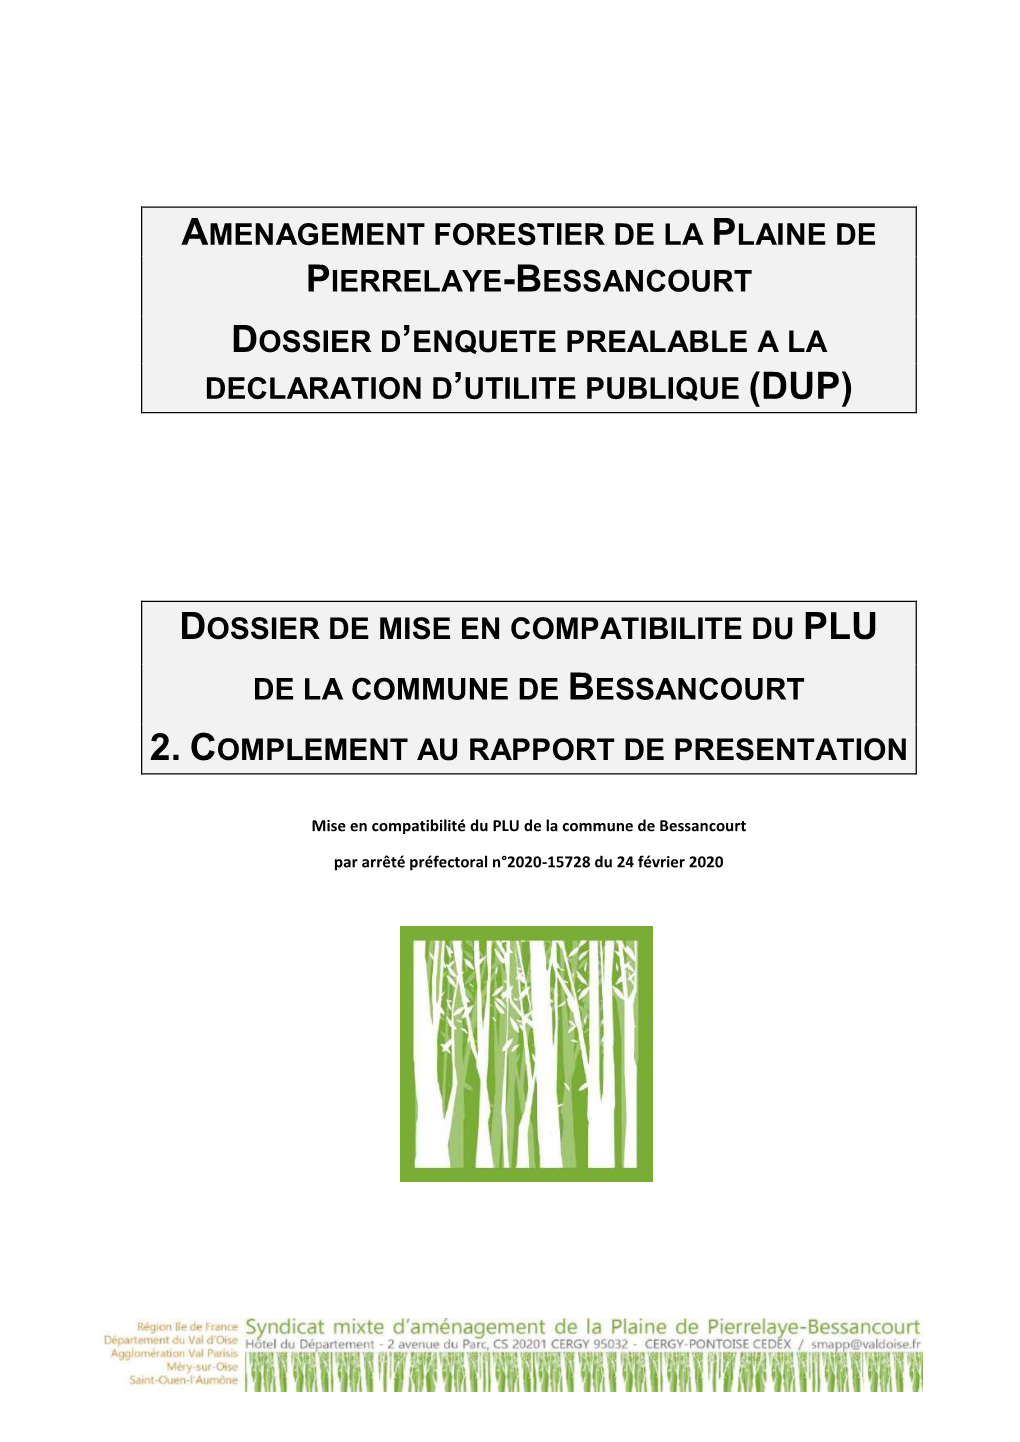 Amenagement Forestier De La Plaine De Pierrelaye-Bessancourt Dossier D’Enquete Prealable a La Declaration D’Utilite Publique (Dup)